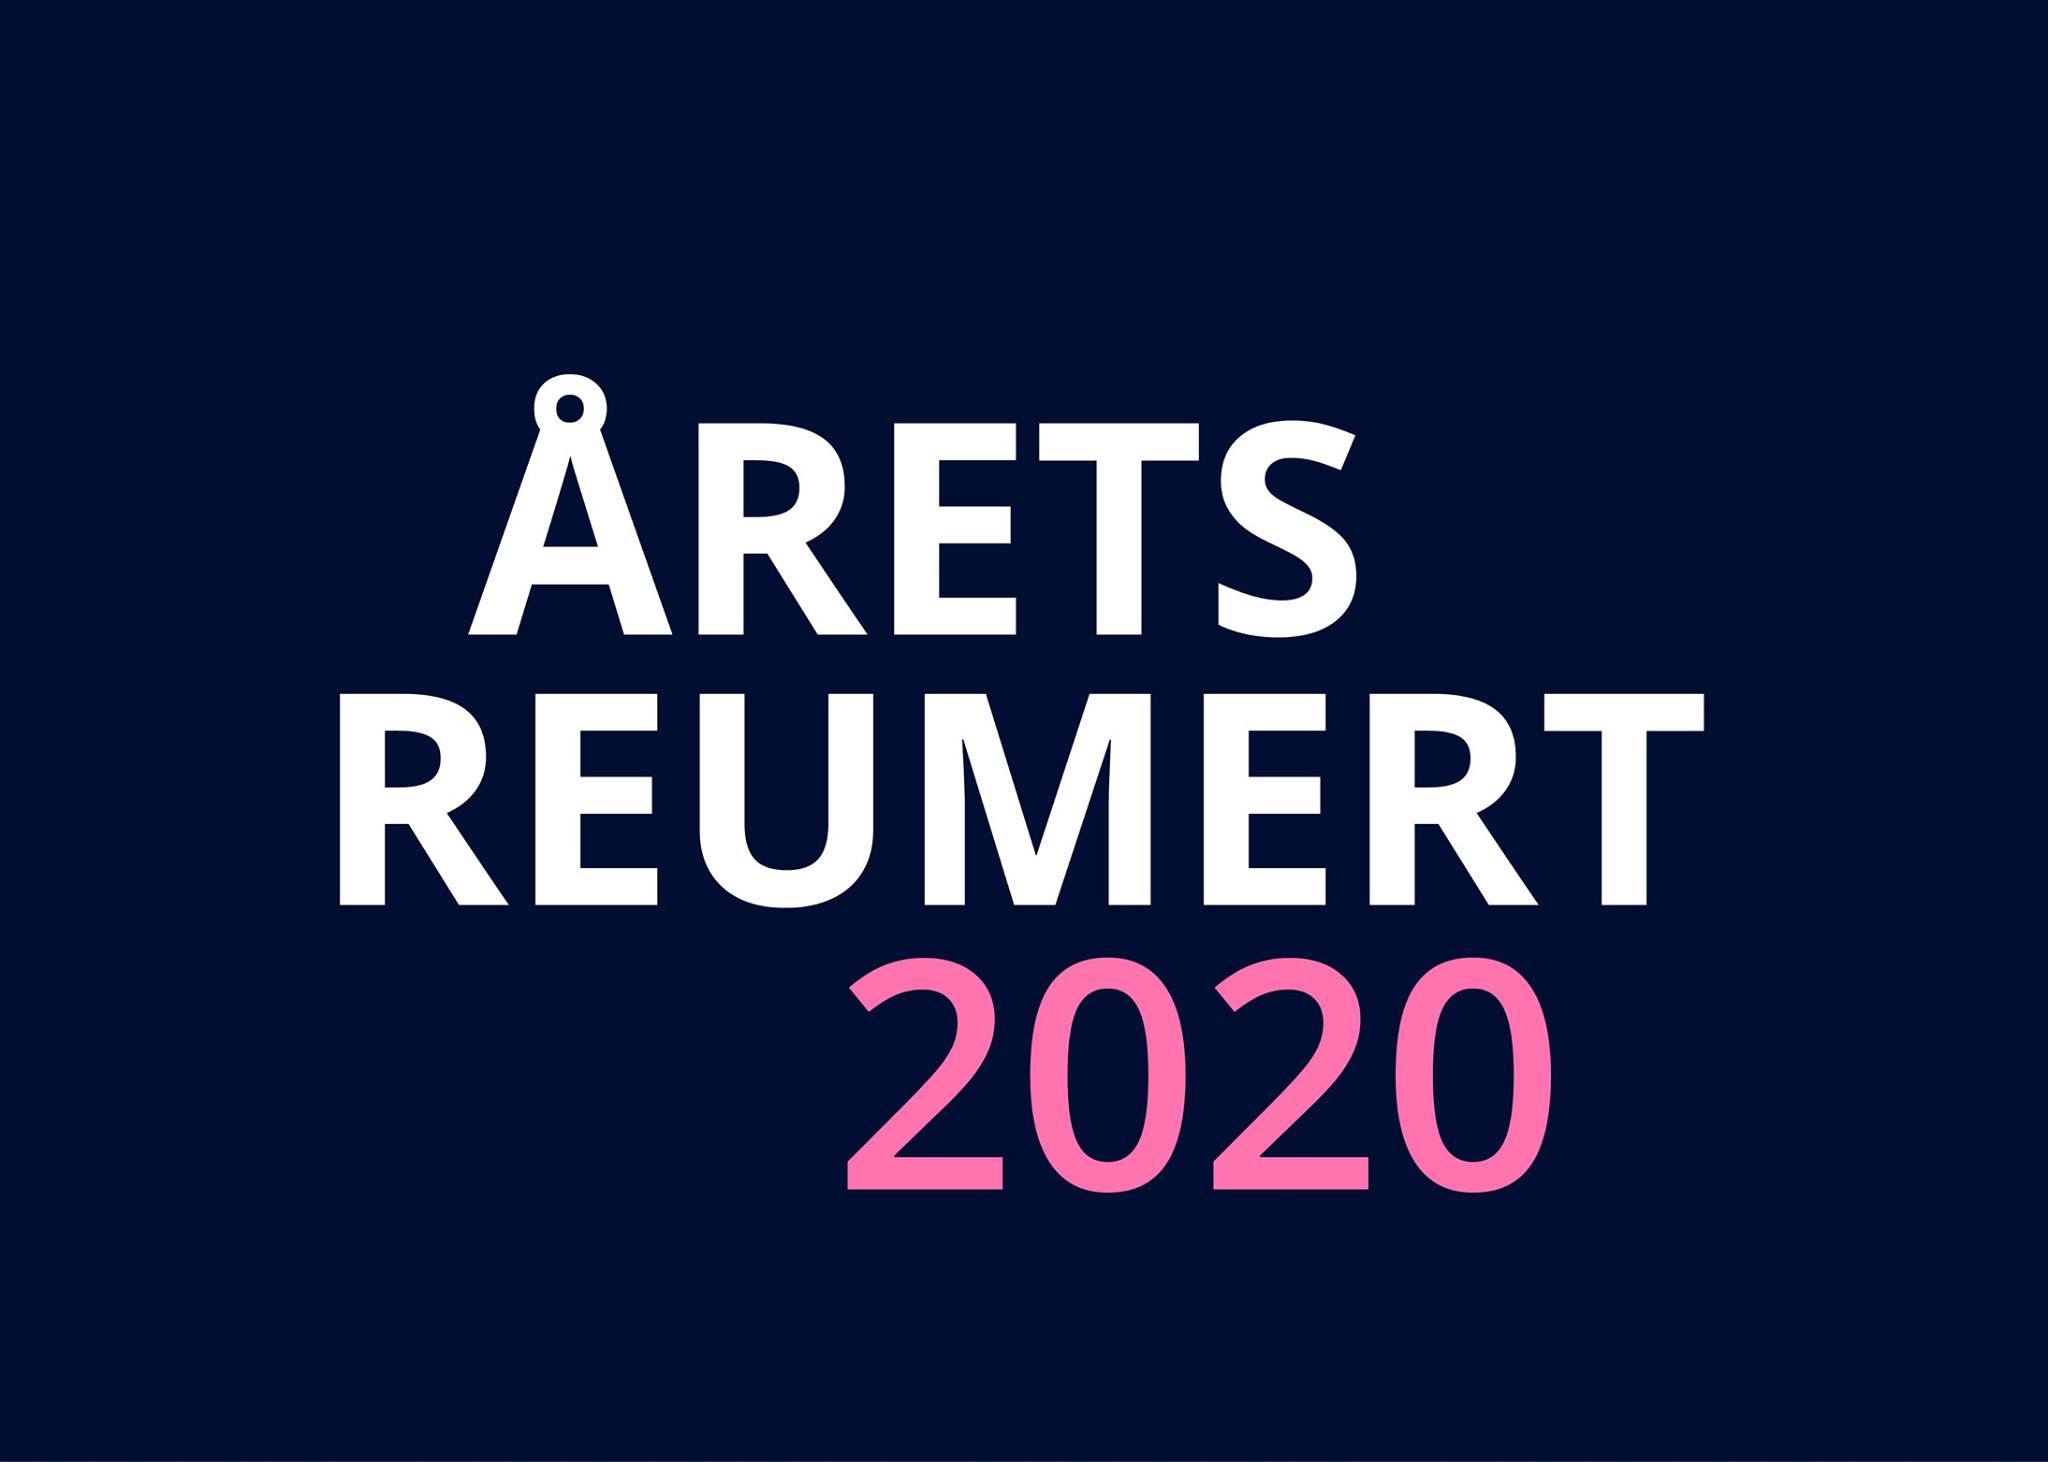 Årets Reumert 2020